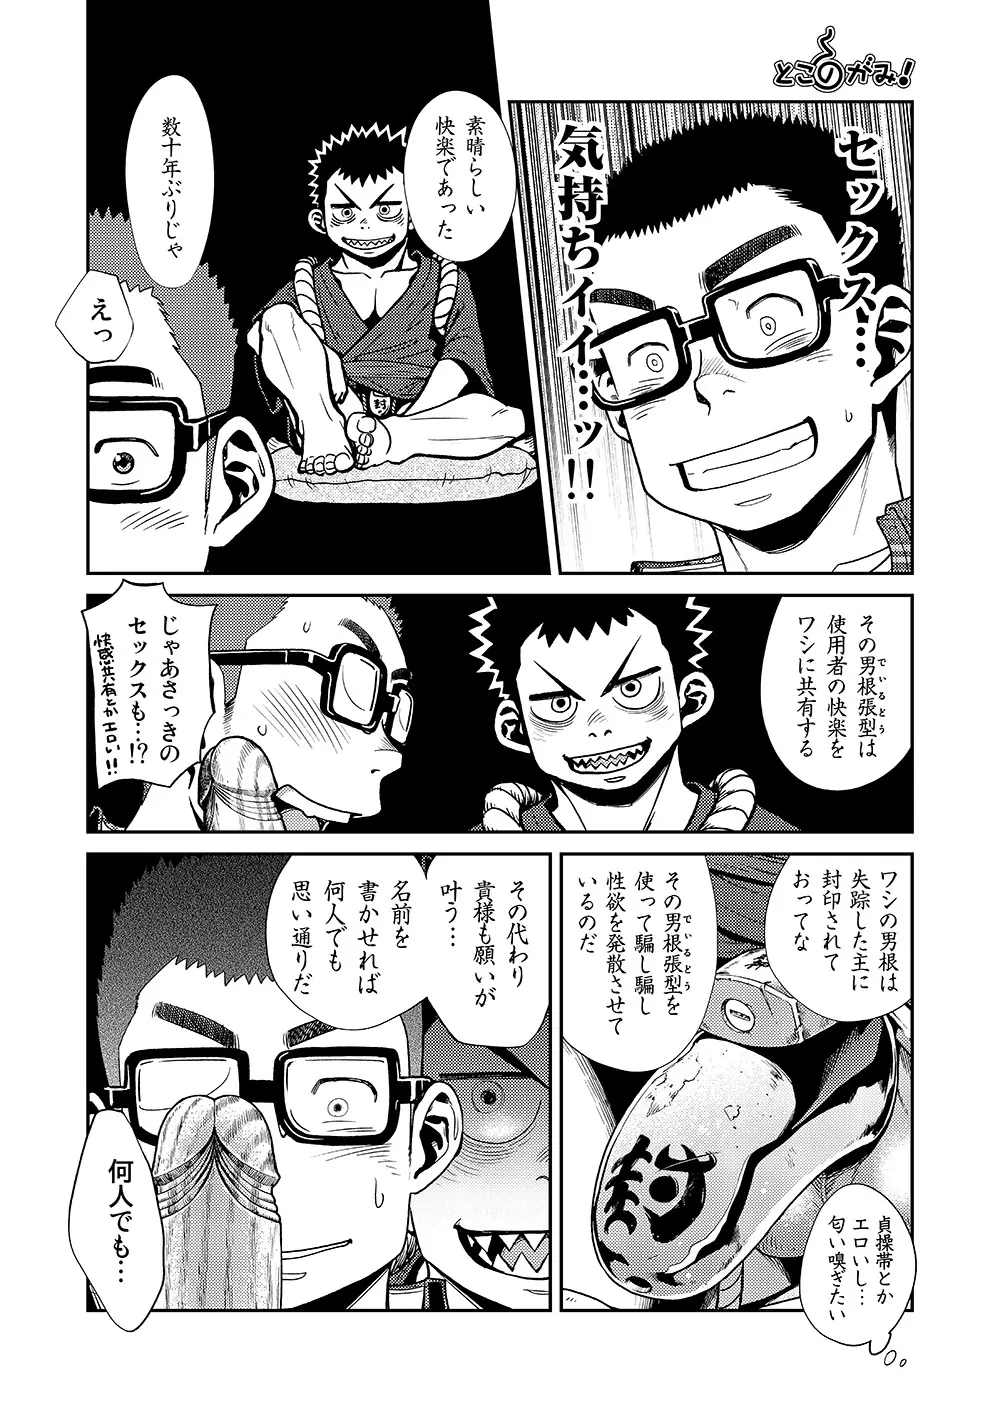 漫画少年ズーム VOL.11 & 12 40ページ